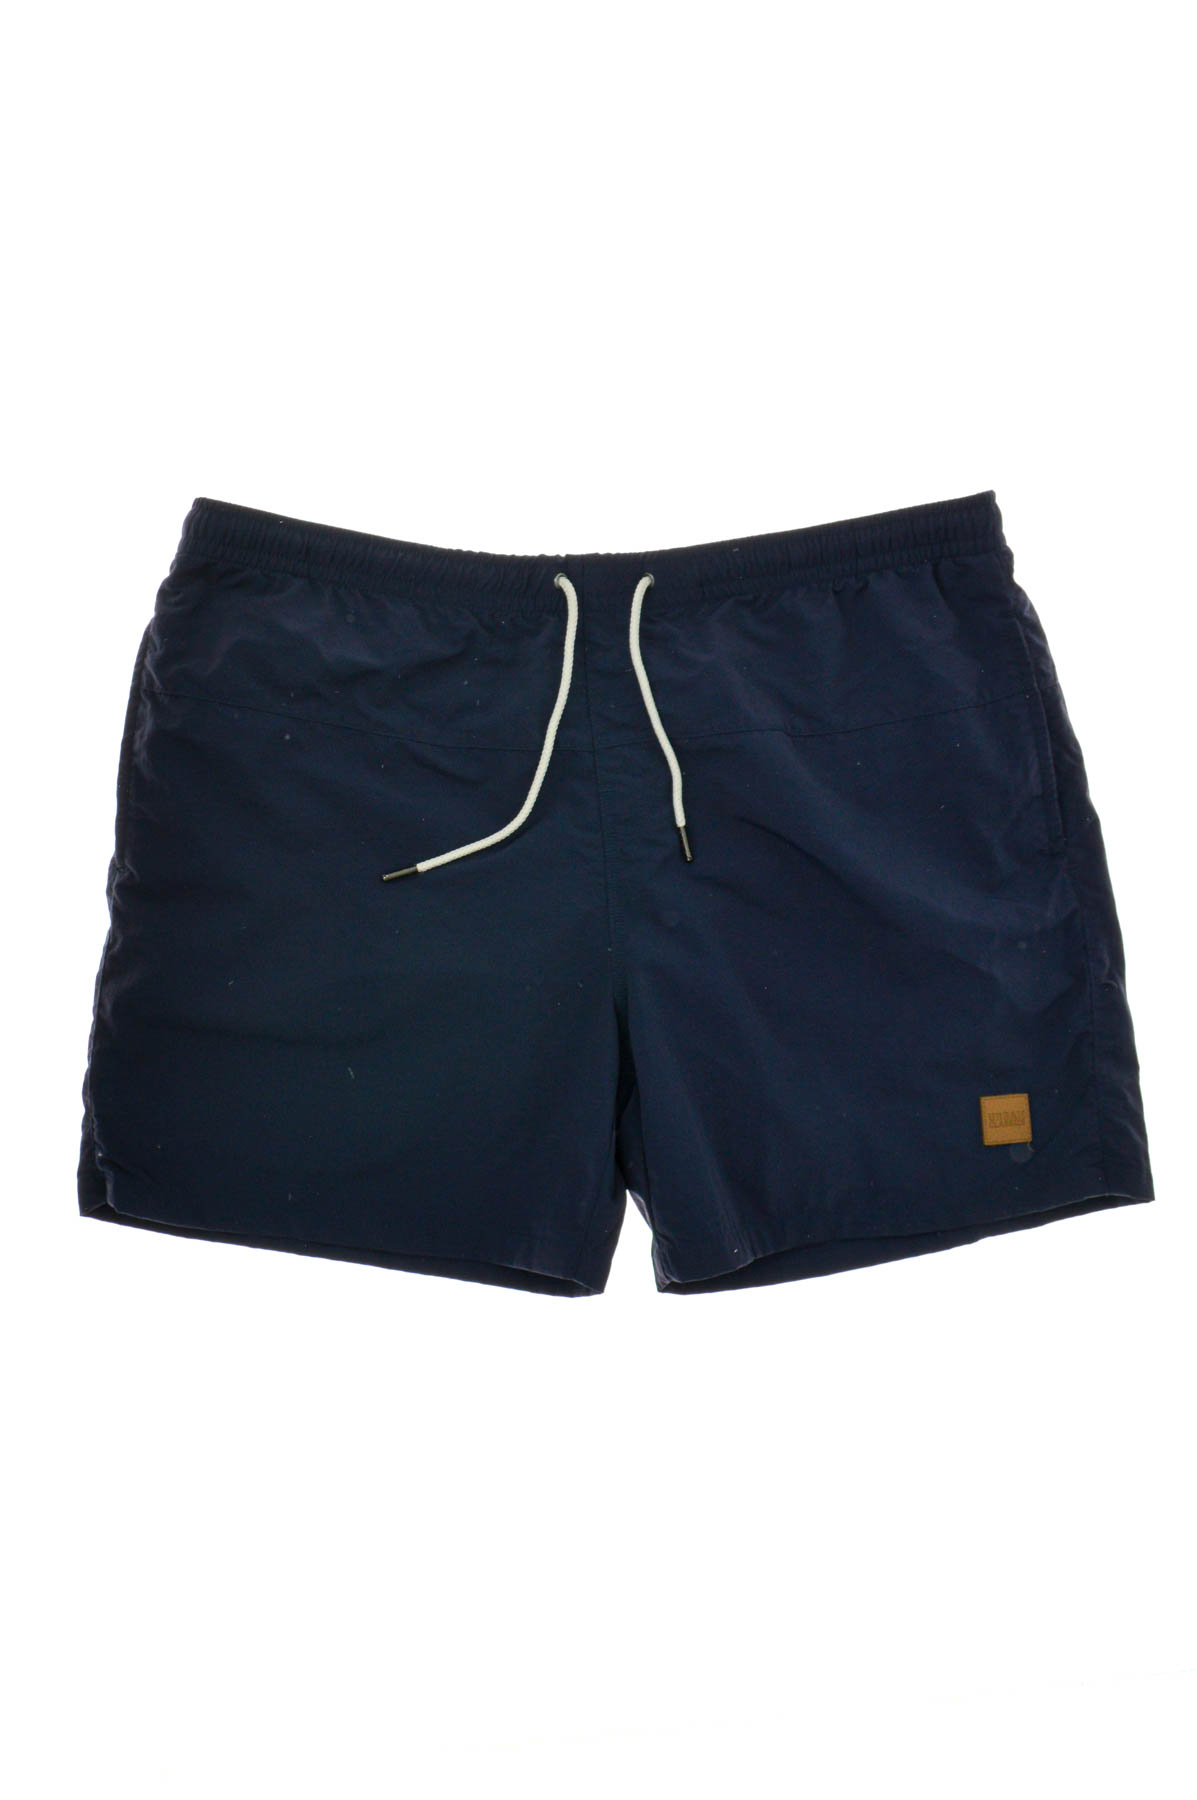 Men's shorts - URBAN CLASSICS - 0